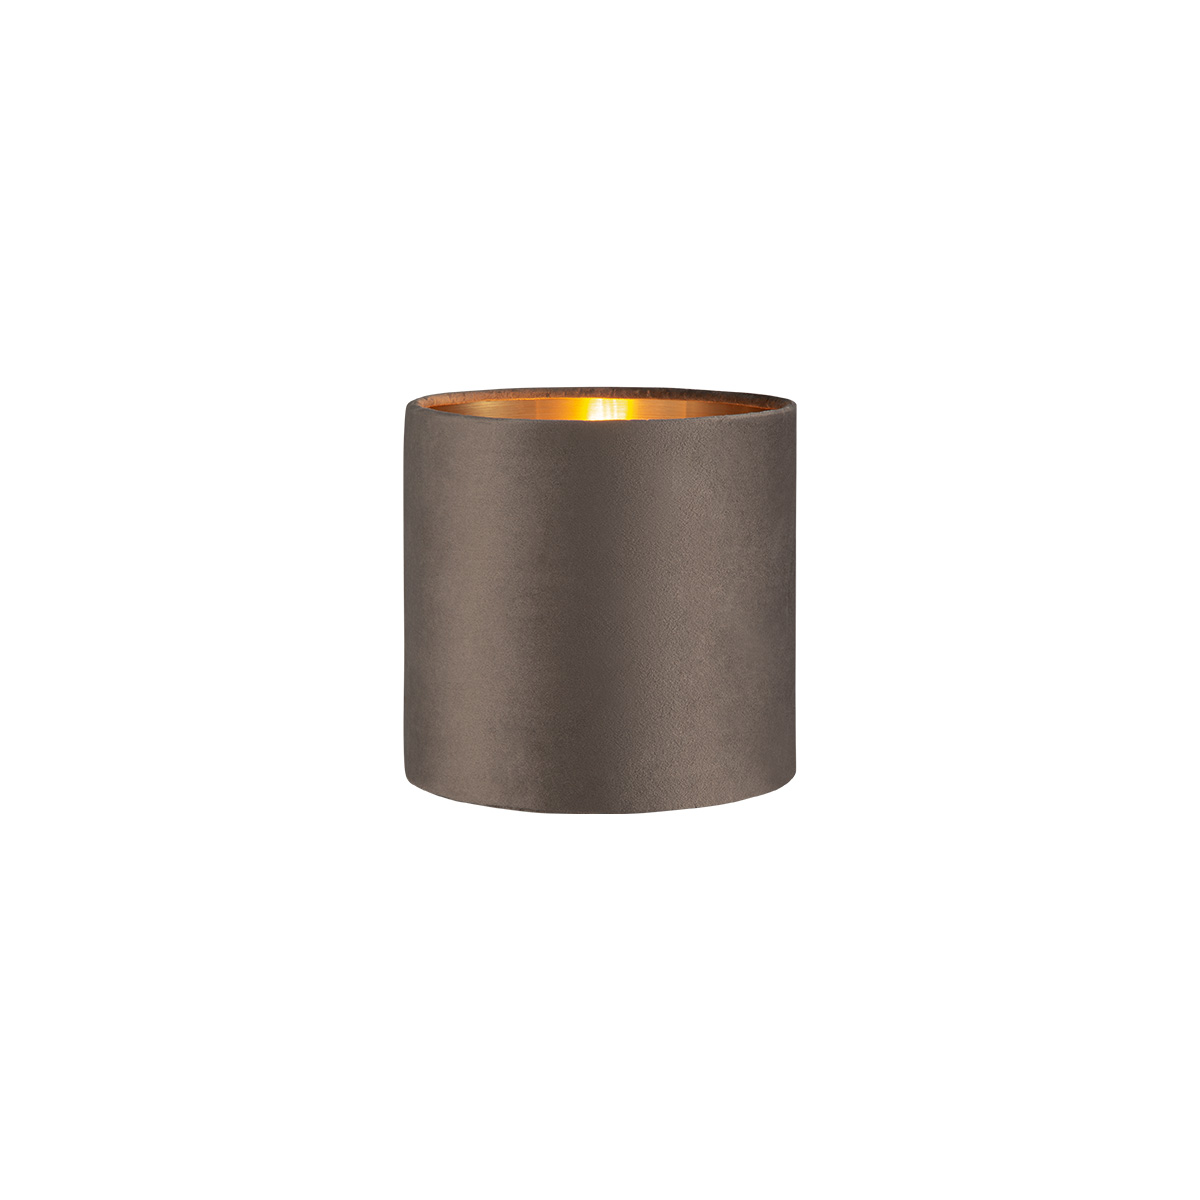 Tangla lighting - TLS7564-15DG - Lampshade - velvet - dark grey - diameter 16cm - E27